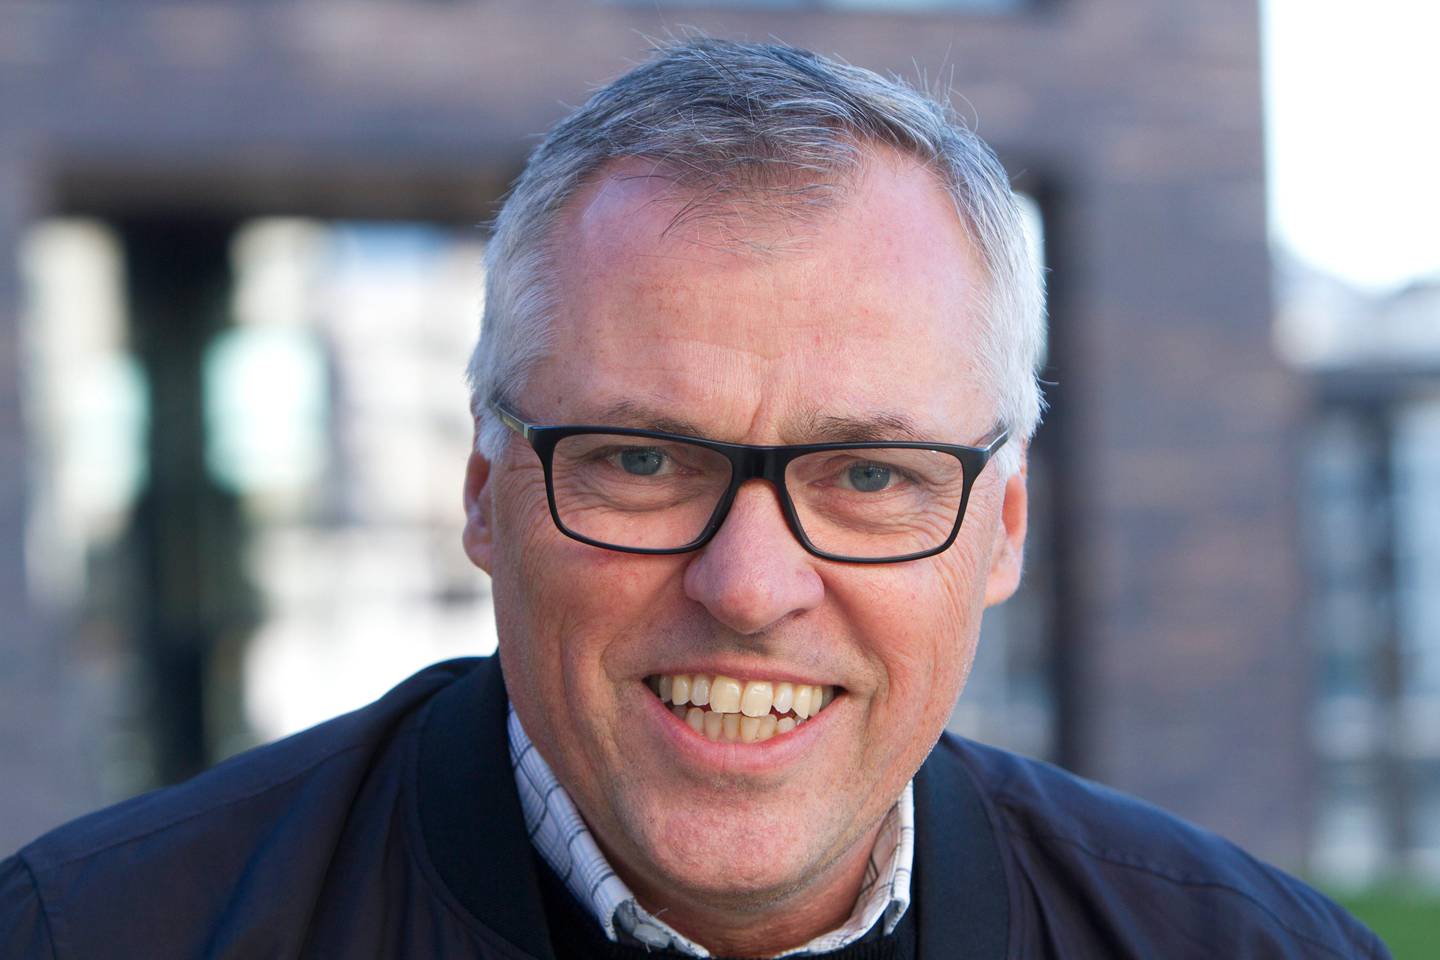 
Vennlig hilsen
Fredrikstad Næringsforening
 
Kjell Arne Græsdal
Daglig leder
Mobil: 90 85 64 64 
